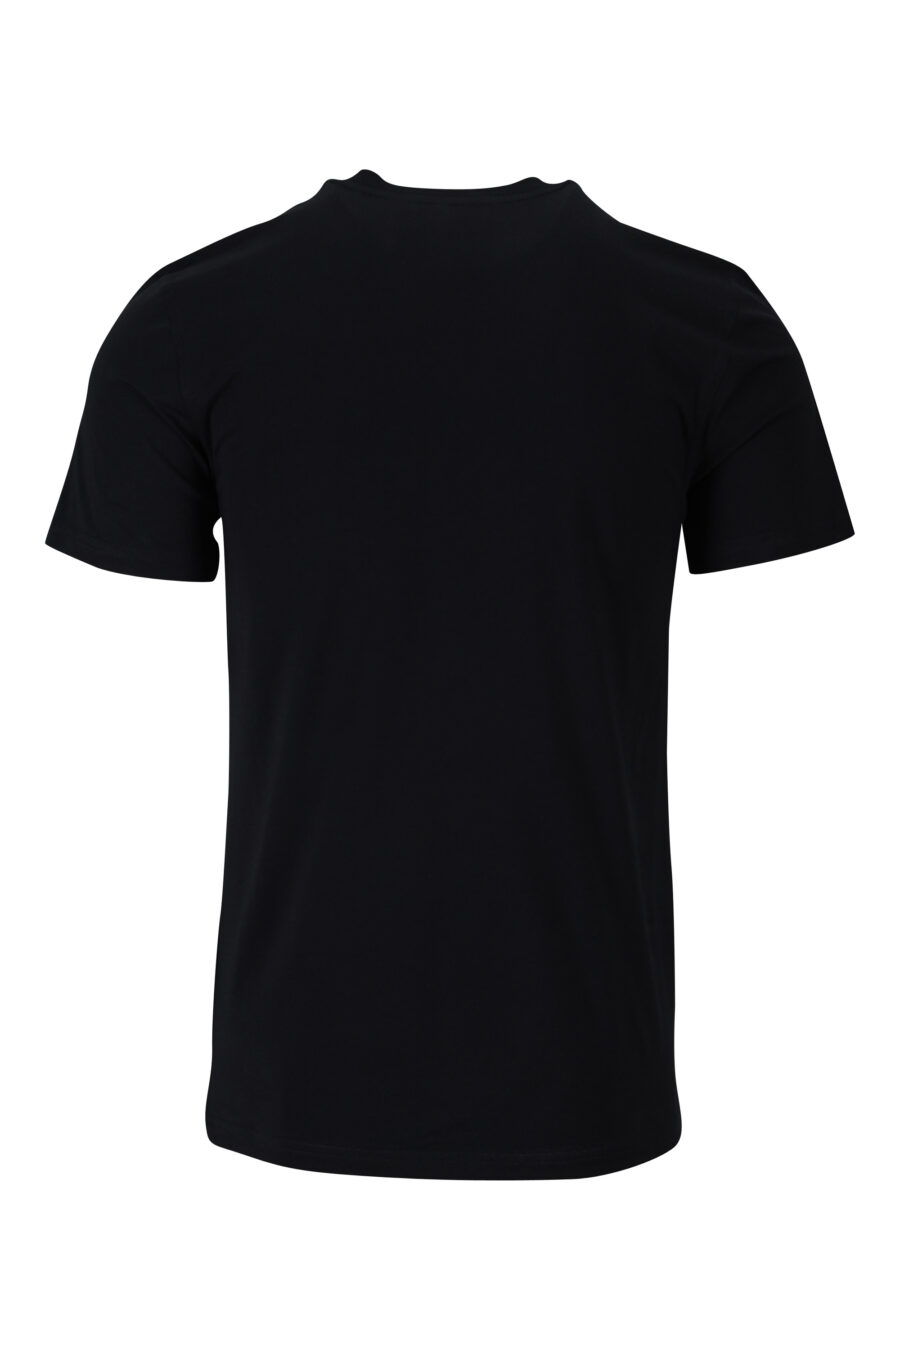 T-shirt noir en éco-coton avec mini-logo "teddy" - 889316853124 1